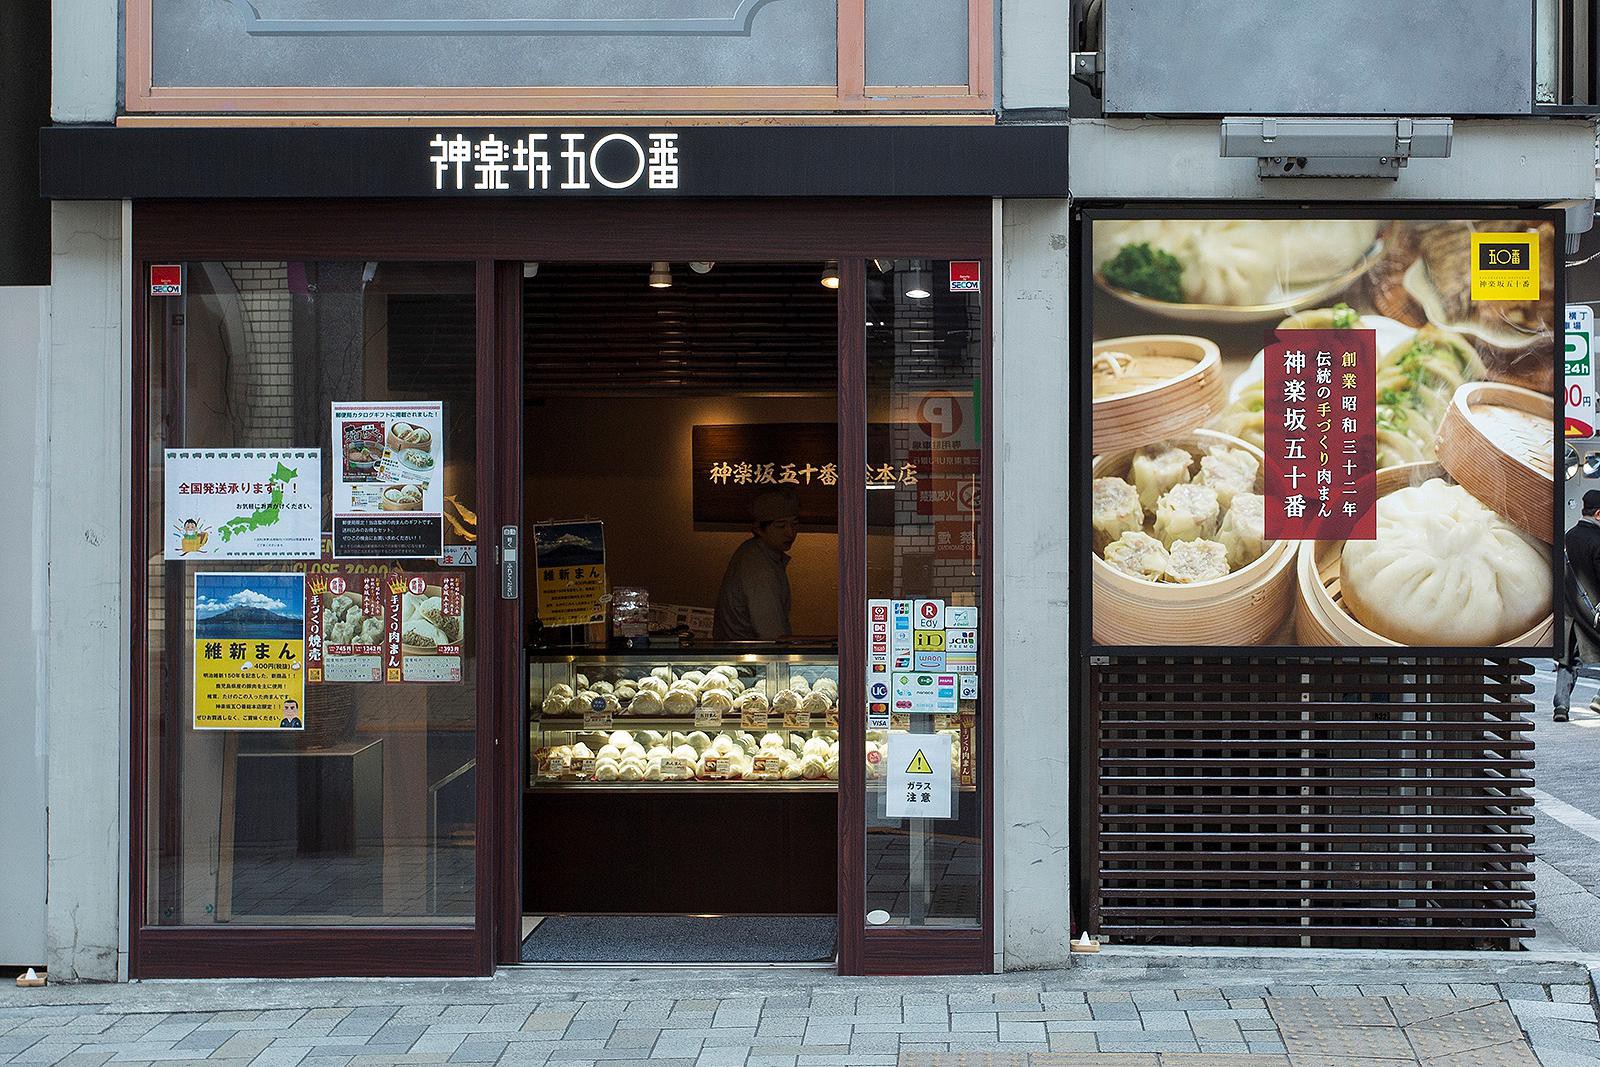 オープンして間もない神楽坂五十番総本店。メニューはテイクアウトのみ。その場で蒸したものと、自分で蒸す冷蔵のものを選ぶことができます。